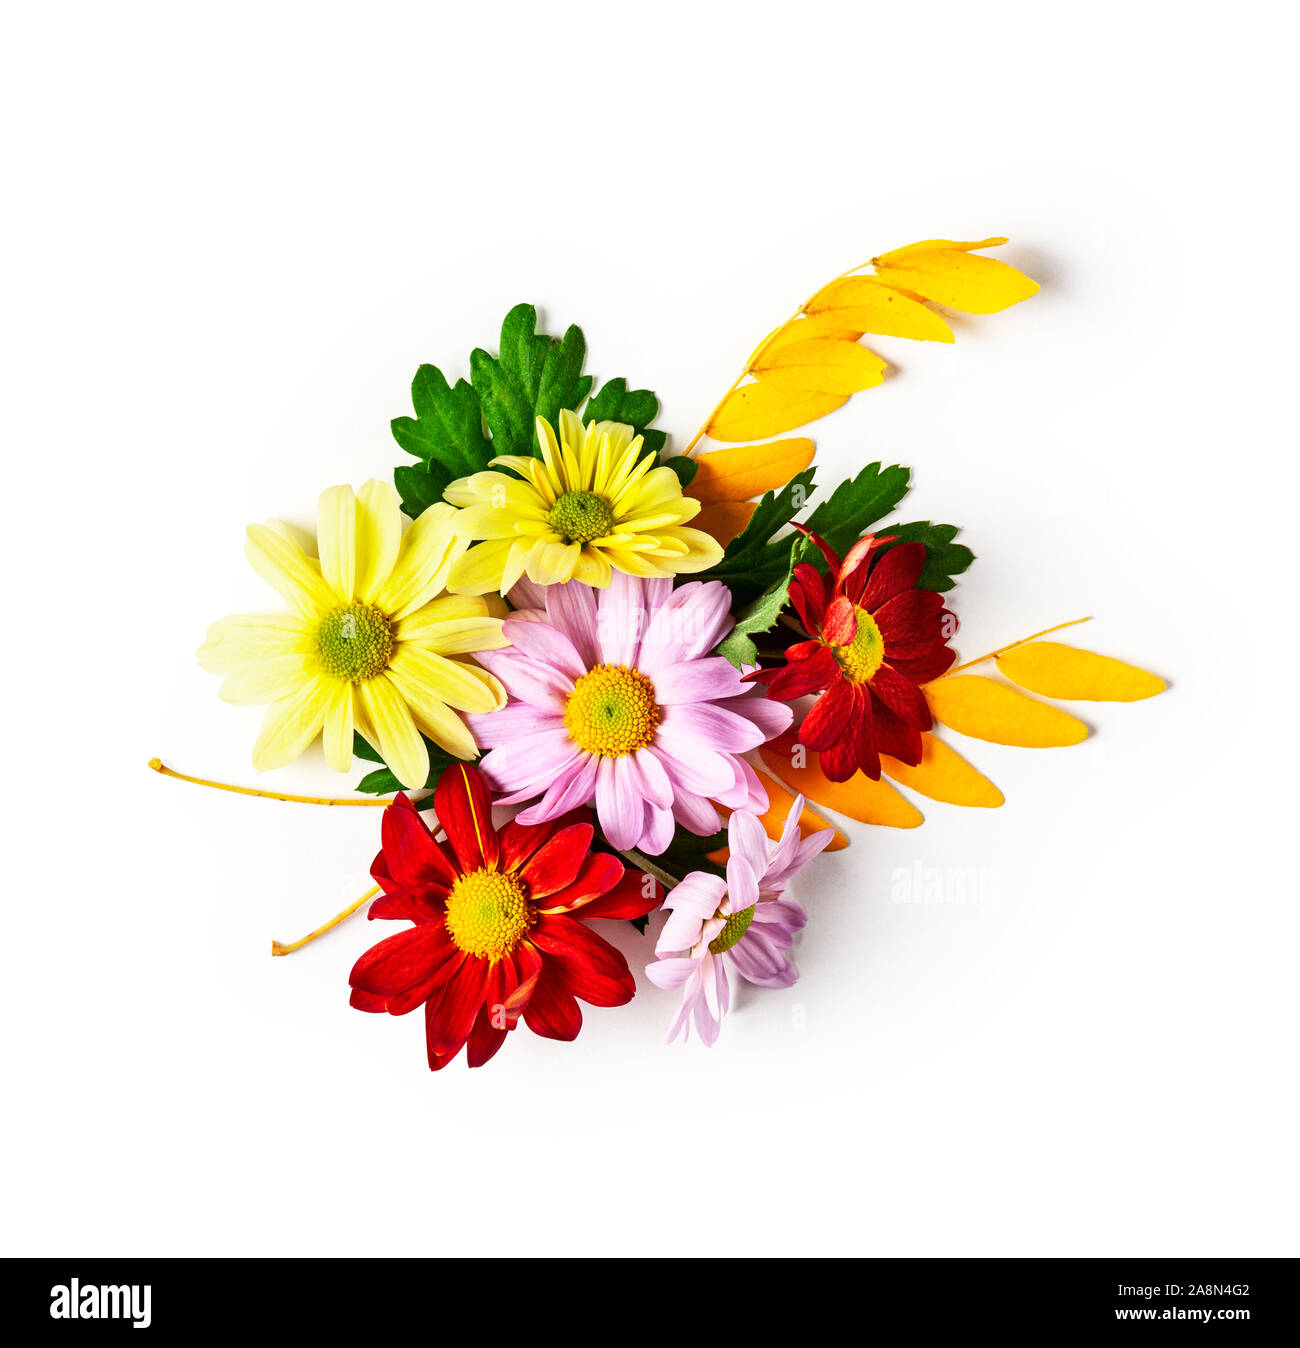 Fleurs chrysanthème avec feuilles de composition. Arrangement de fleurs automne isolé sur fond blanc chemin de détourage inclus. Haut de la vue, télévision lay. Flor Banque D'Images